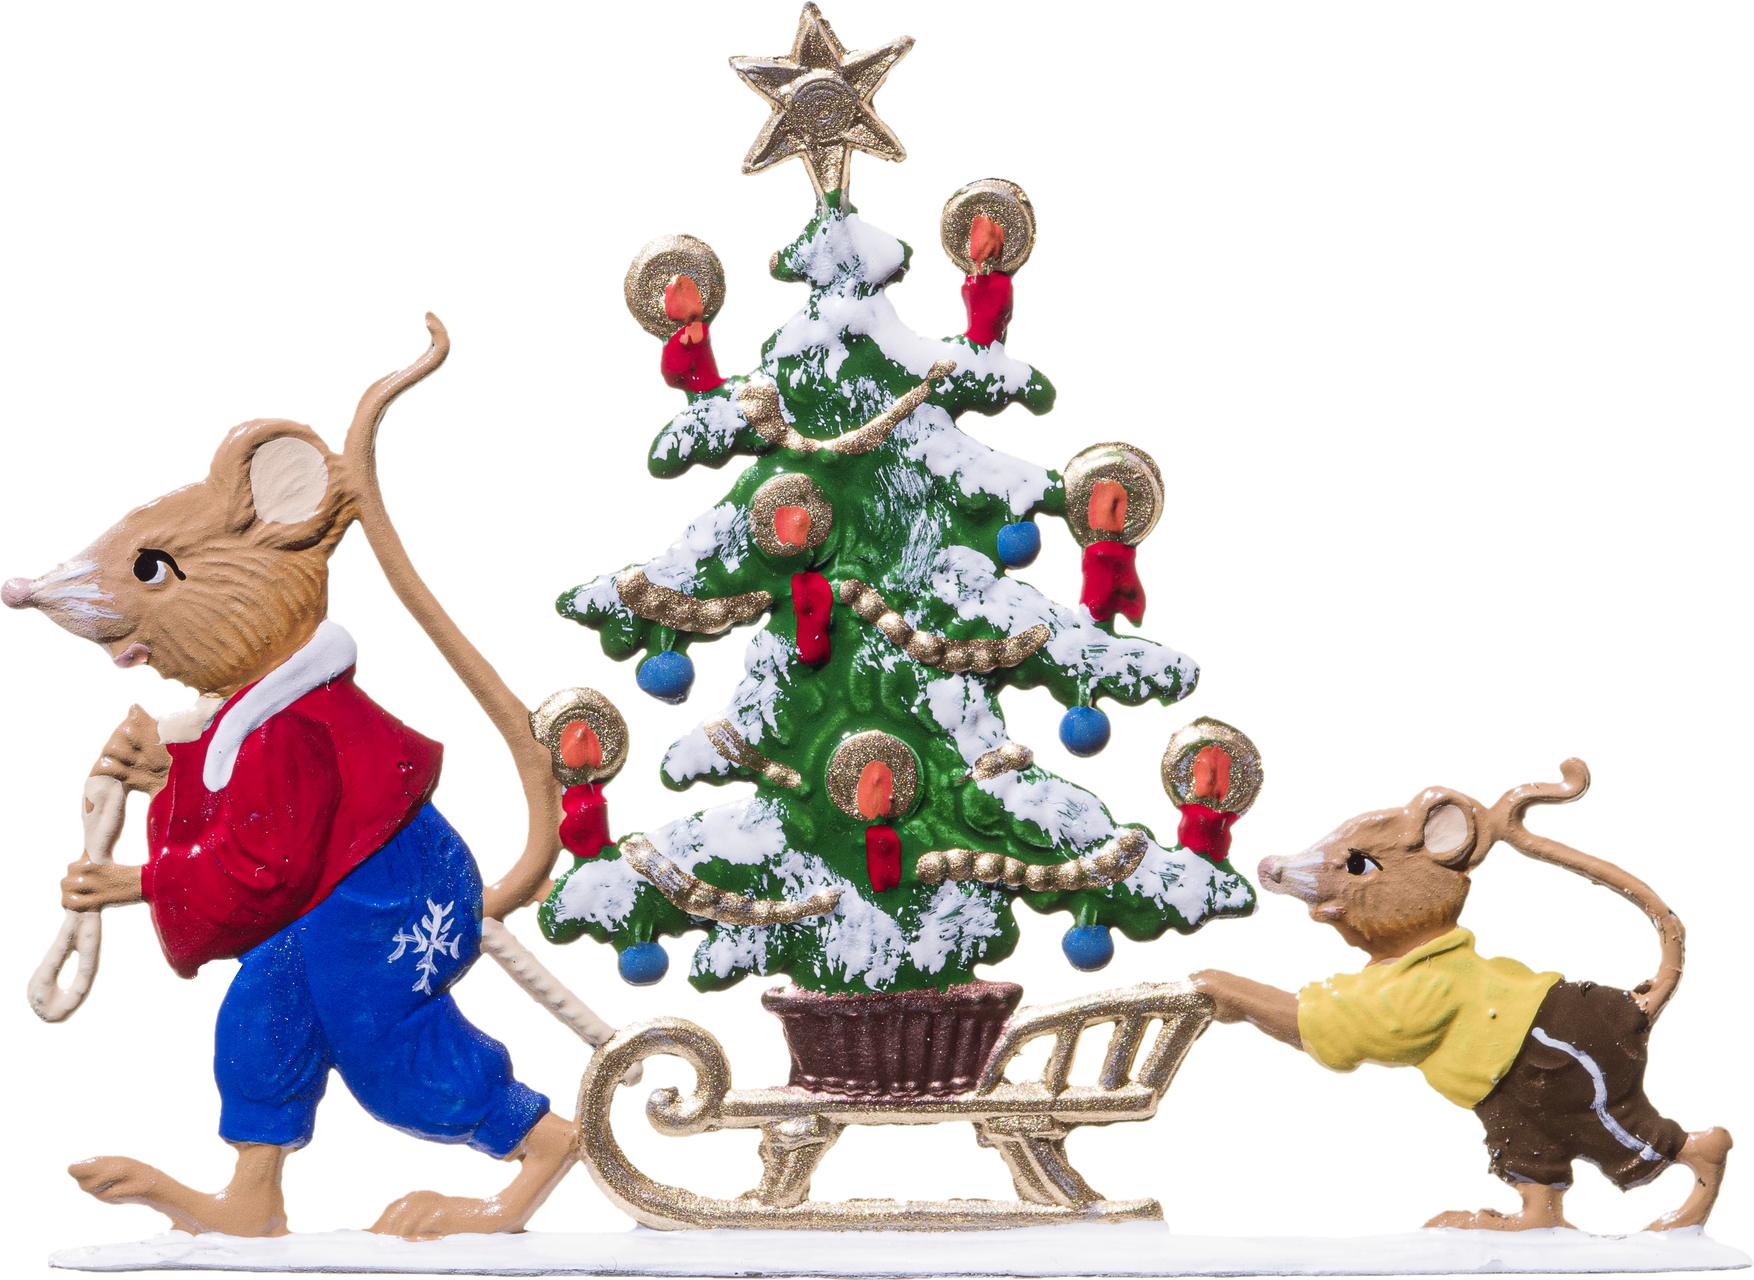 Mäuse transportieren Weihnachtsbaum